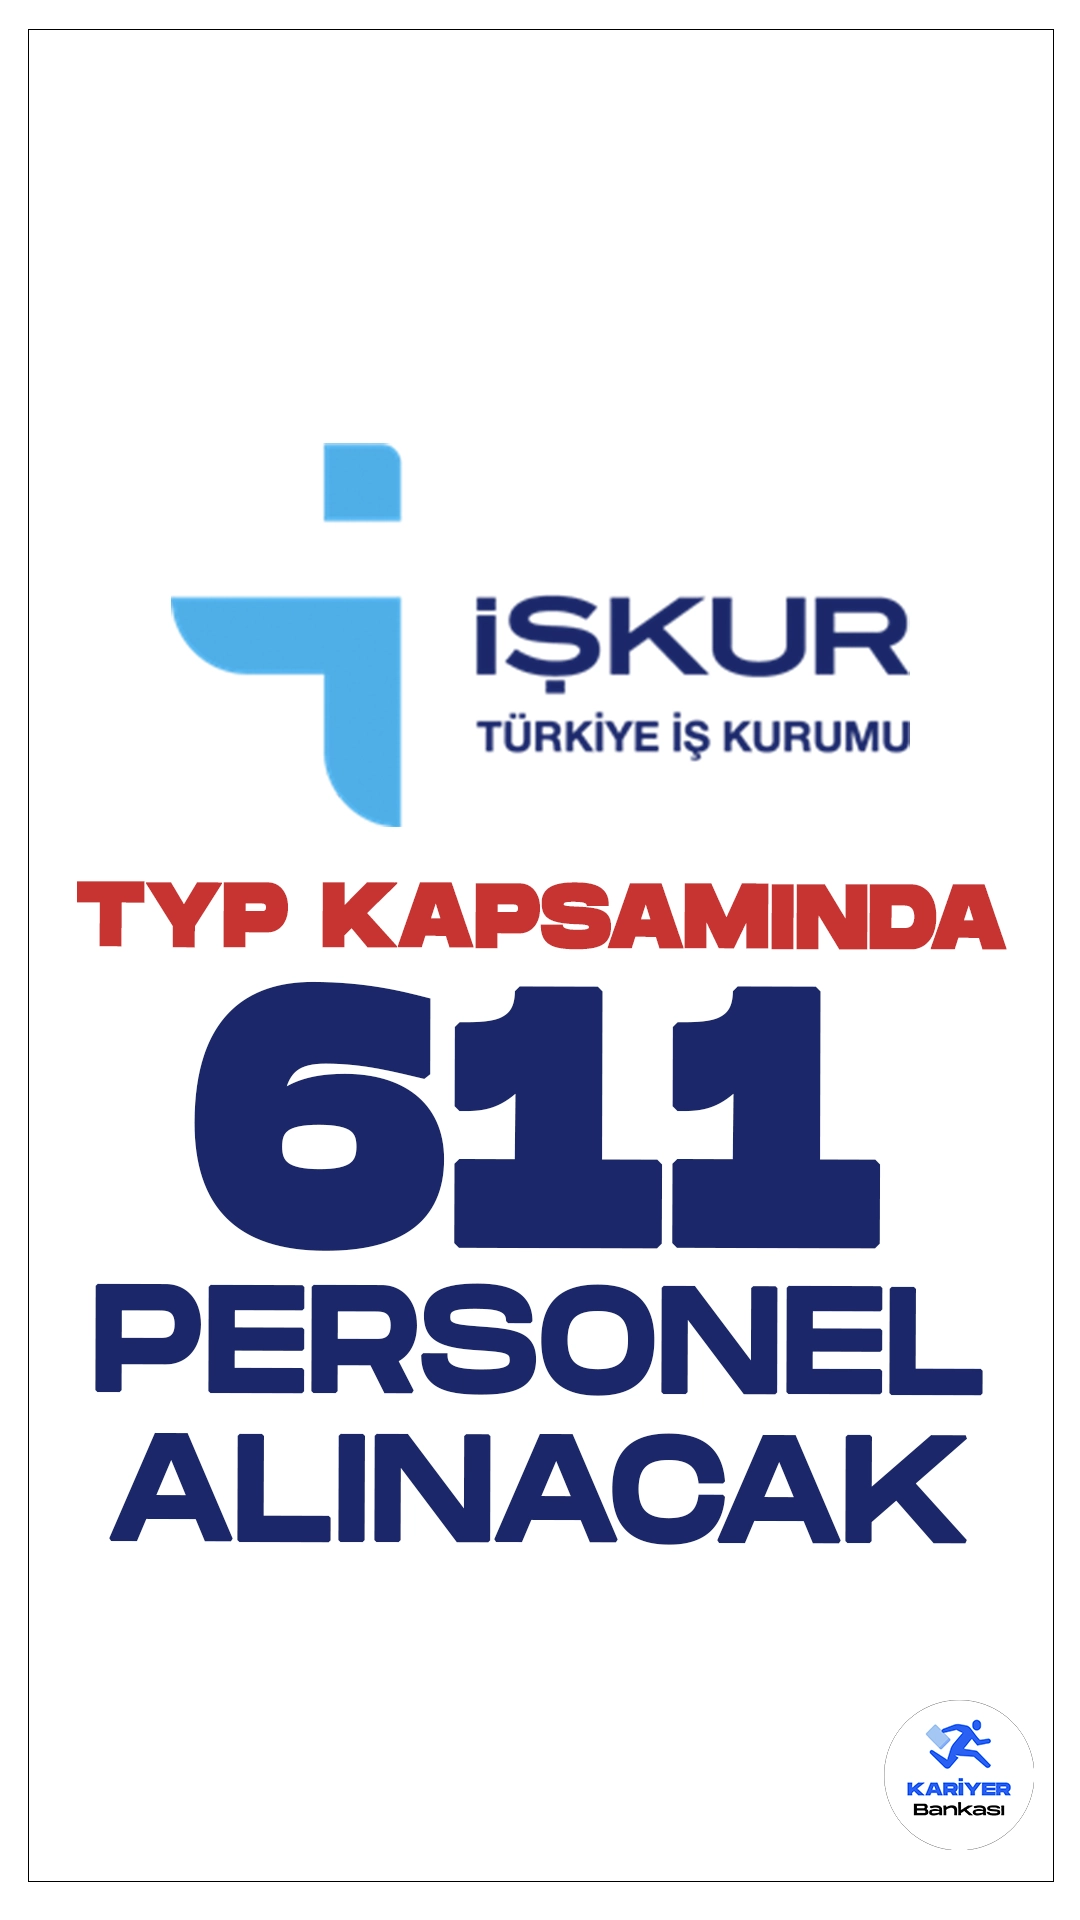 İŞKUR Üzerinden TYP Kapsamında 661 Personel Alınacak. Türkiye İş Kurumu sayfasından yayımlanan duyurulara göre, Kütahya, Şanlıurfa ve Niğde illerine Toplum Yararına Programlar (TYP) kapsamında 611 personel alımı yapılacak. Başvurular İŞKUR üzerinden online olarak gerçekleştirilecek. Başvuru yapacak adayların belirtilen şartları dikkatle incelemesi gerekmektedir.